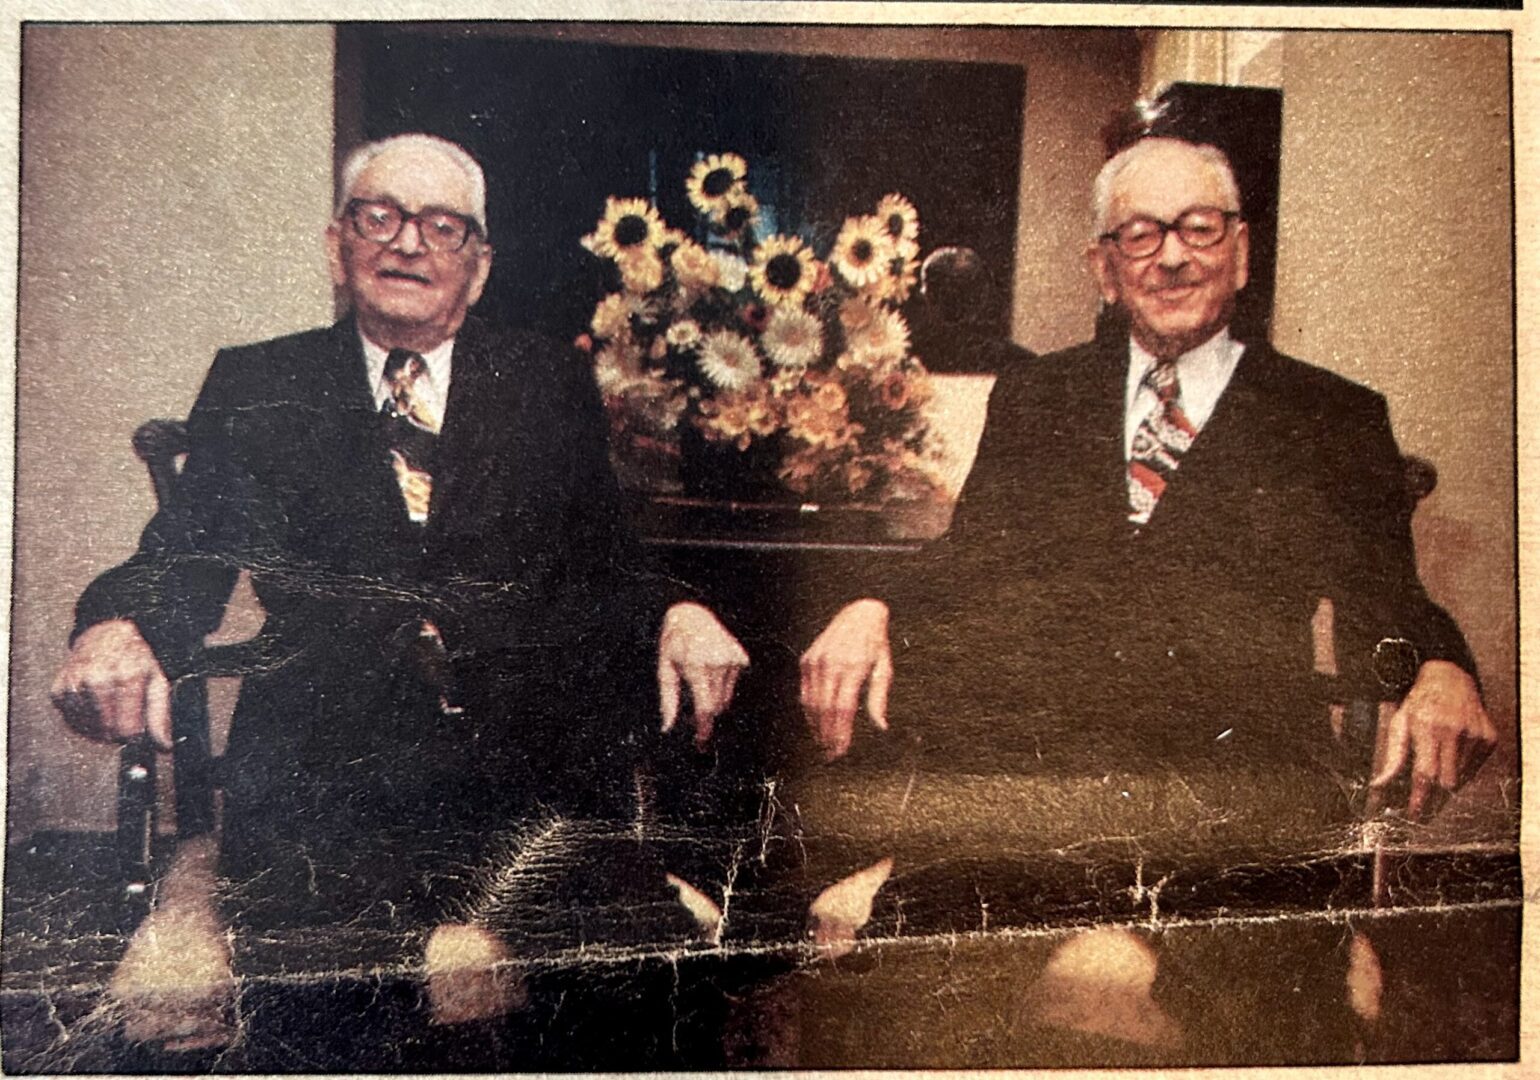 Rudy & Joe Bernstein, 1983 (age 90)